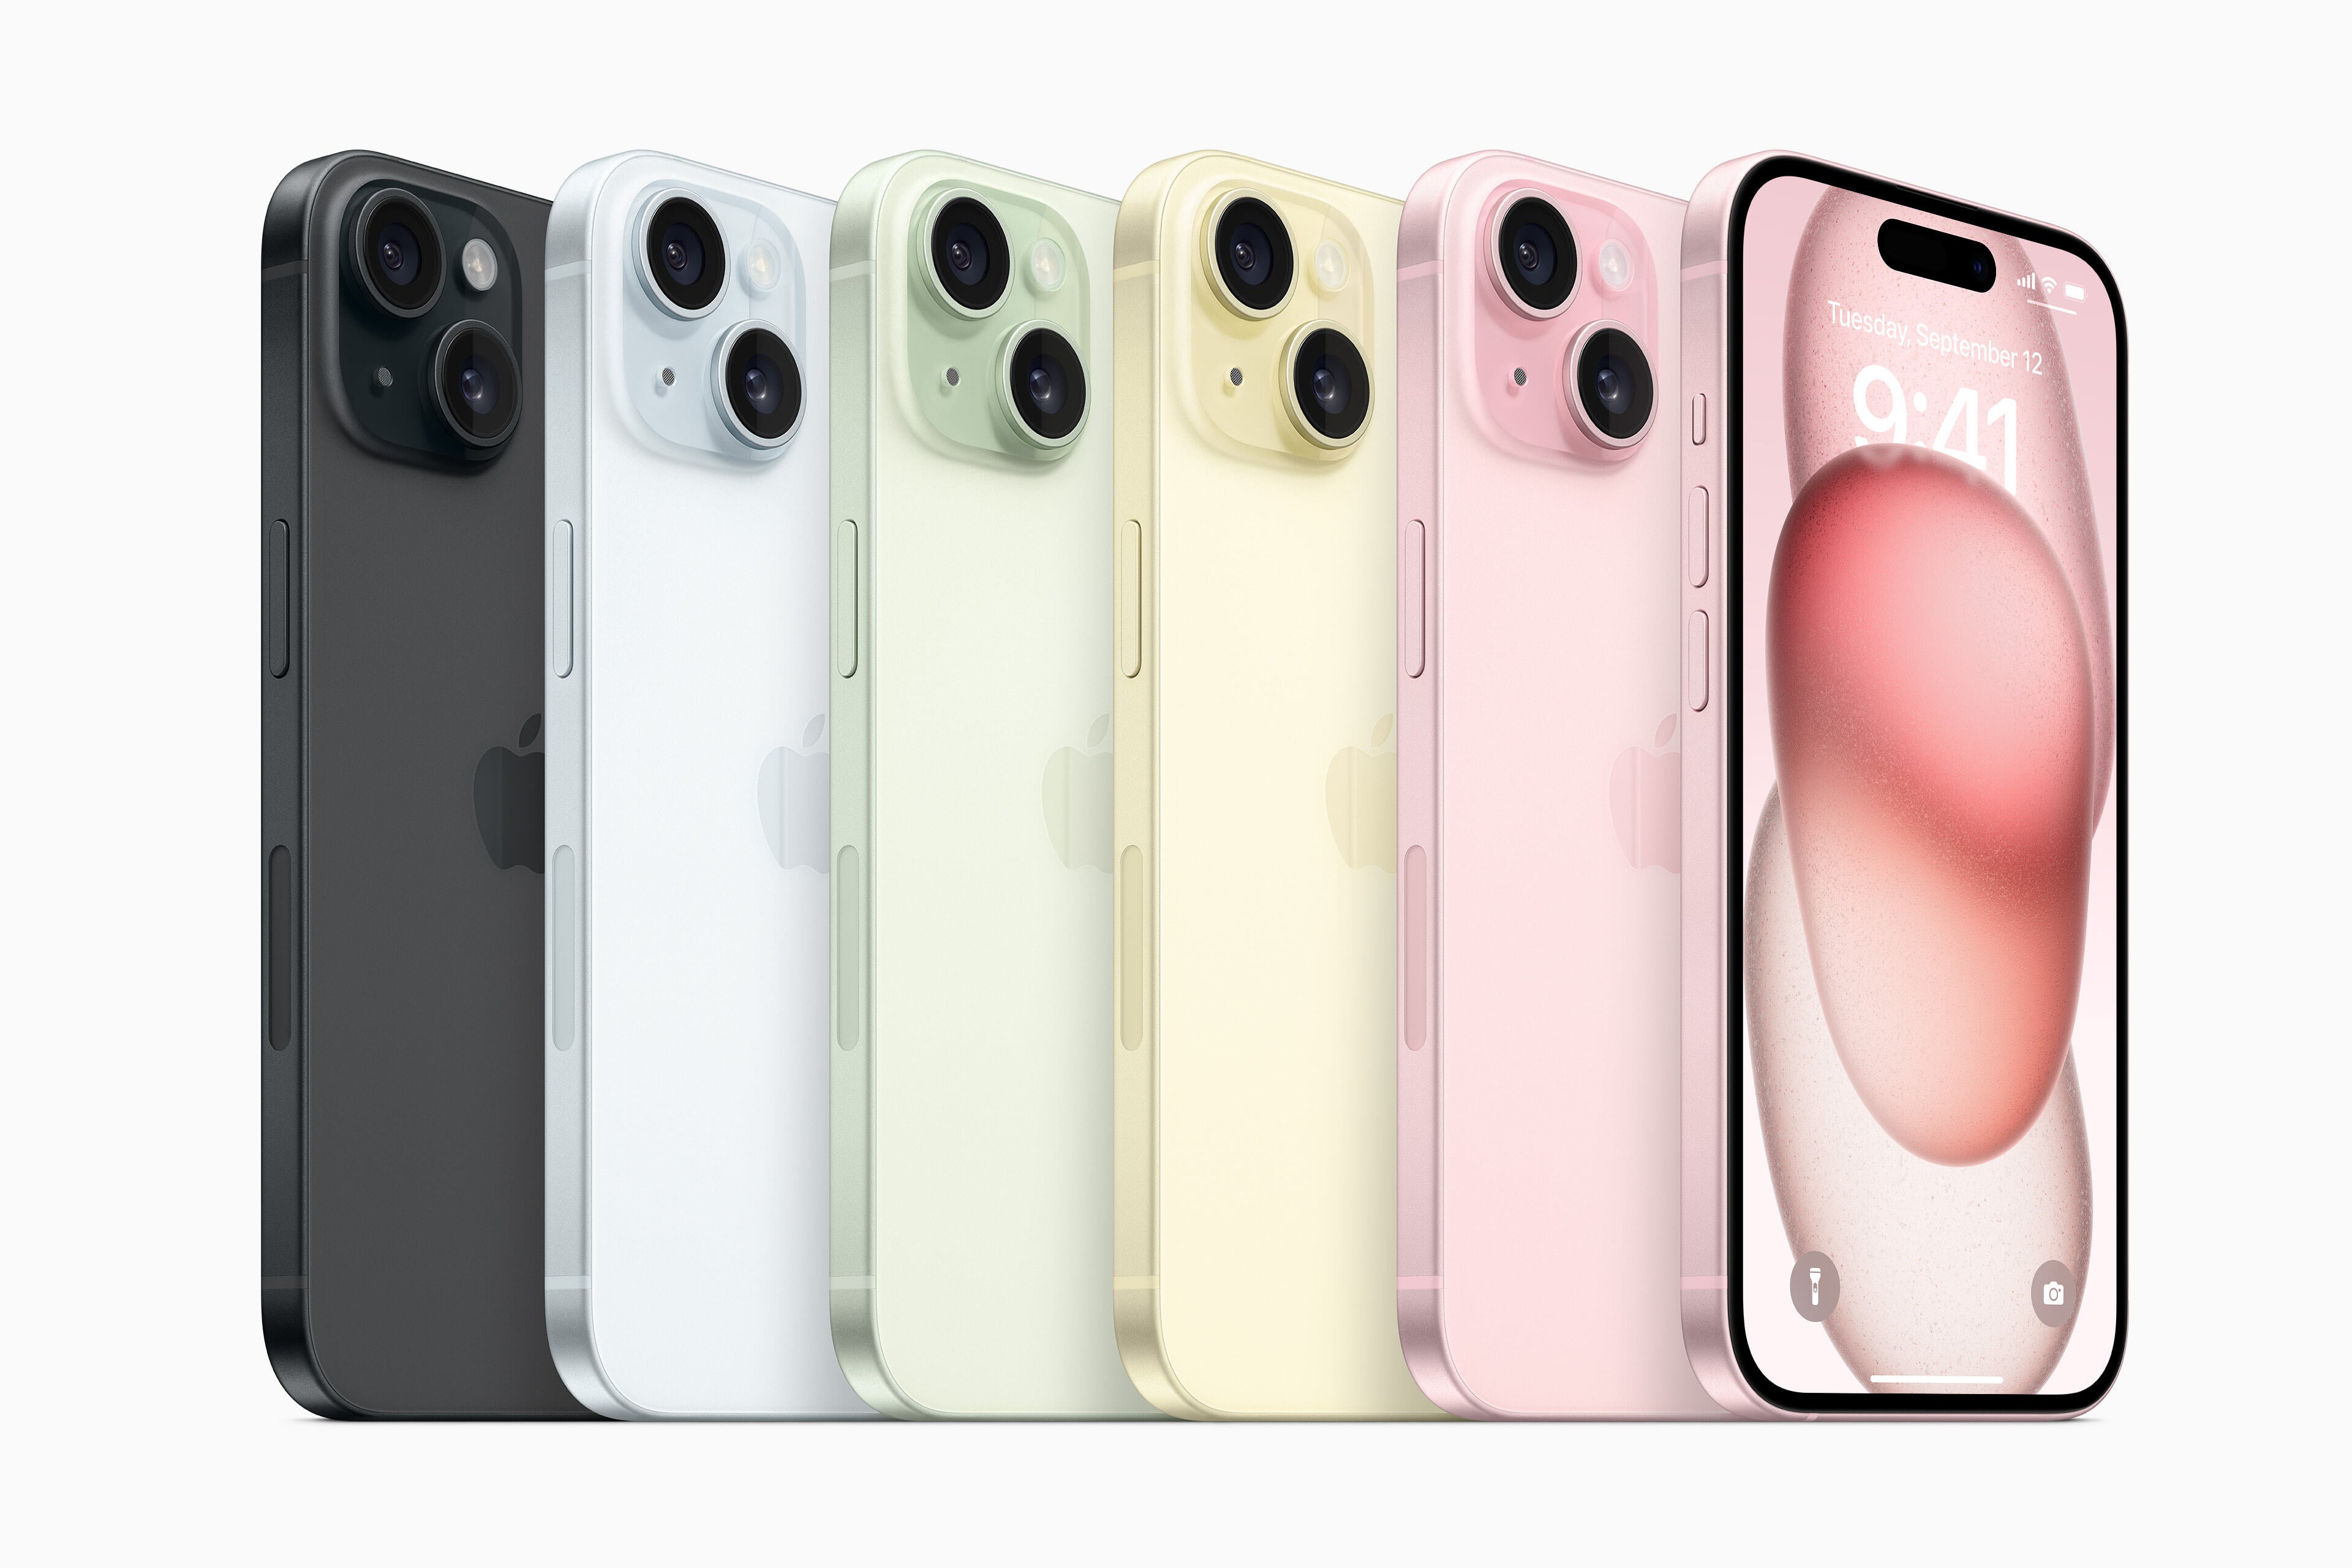 Варианты цвета iPhone 15 - черный, синий, зеленый, желтый, розовый (слева направо) - Дата выпуска iPhone 15, цена, спецификации и необходимые знания